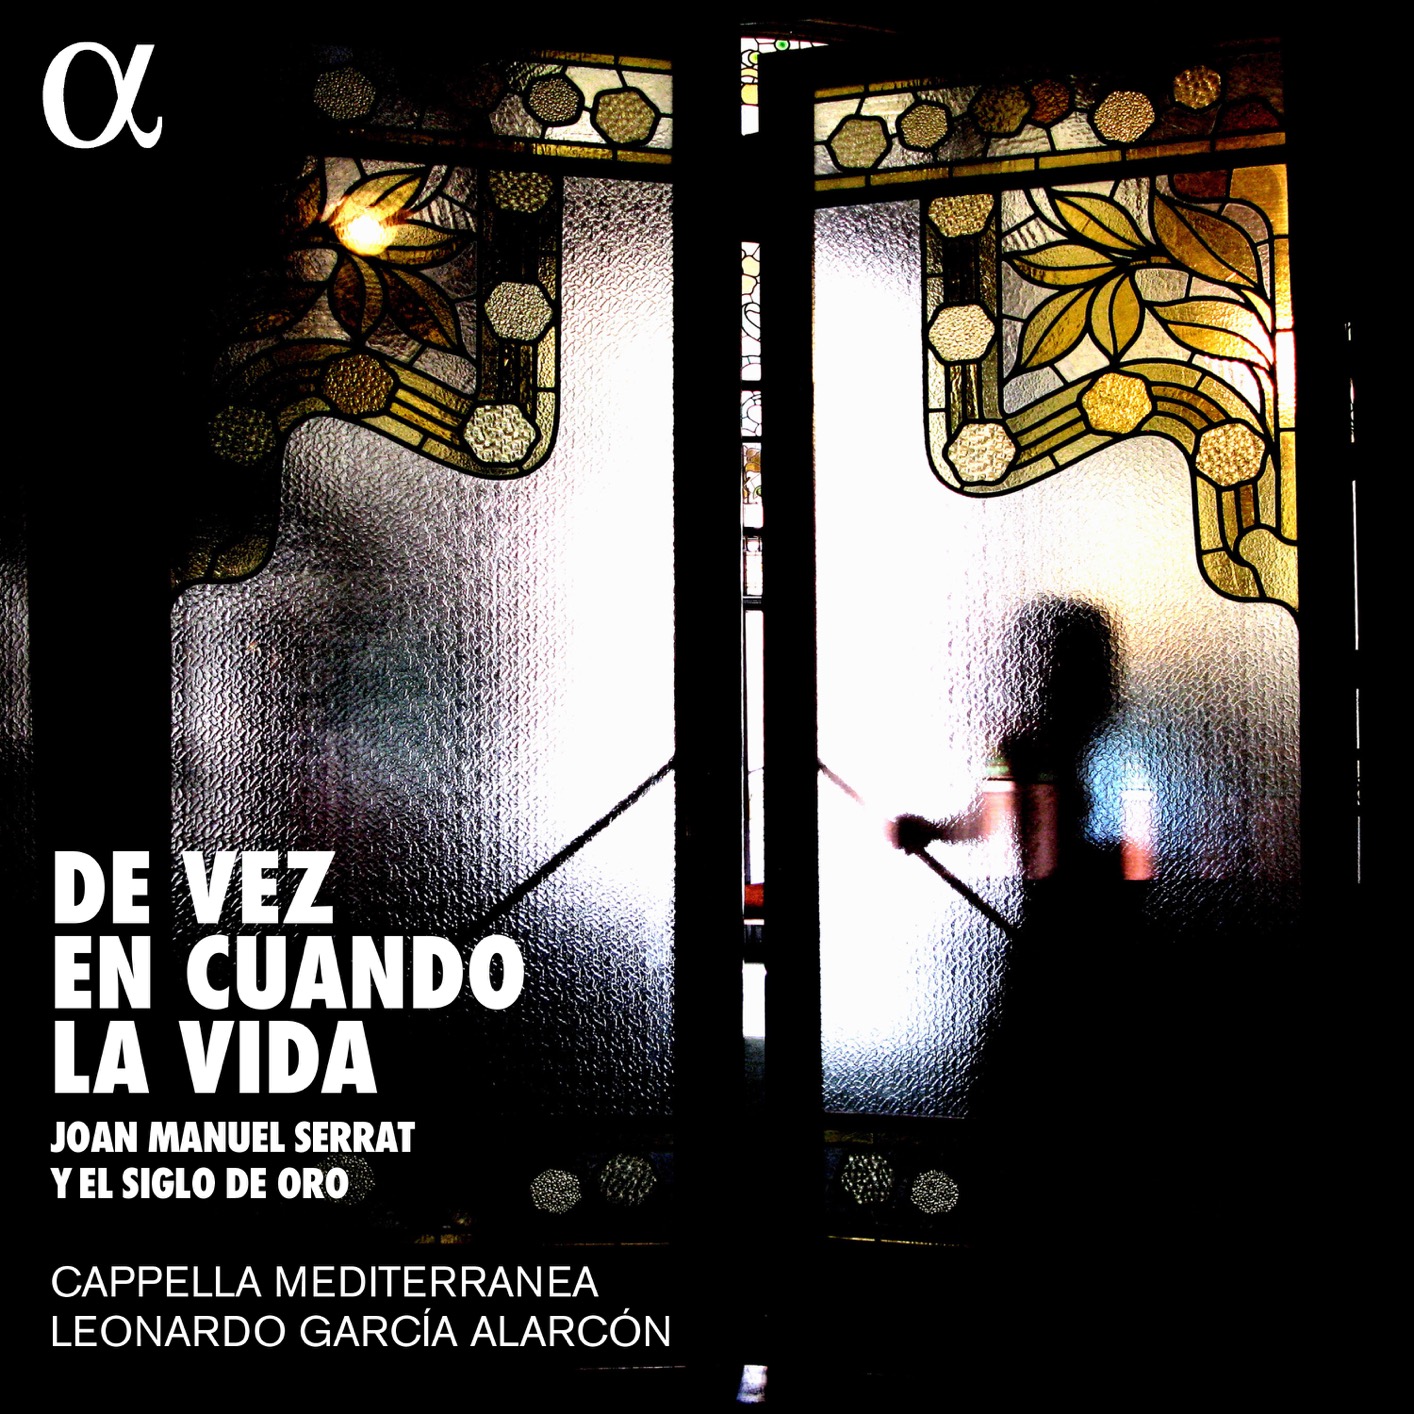 Cappella Mediterranea & Leonardo Garcia Alarcon - De vez en cuando la vida (2018) [FLAC 24bit/88,2kHz]